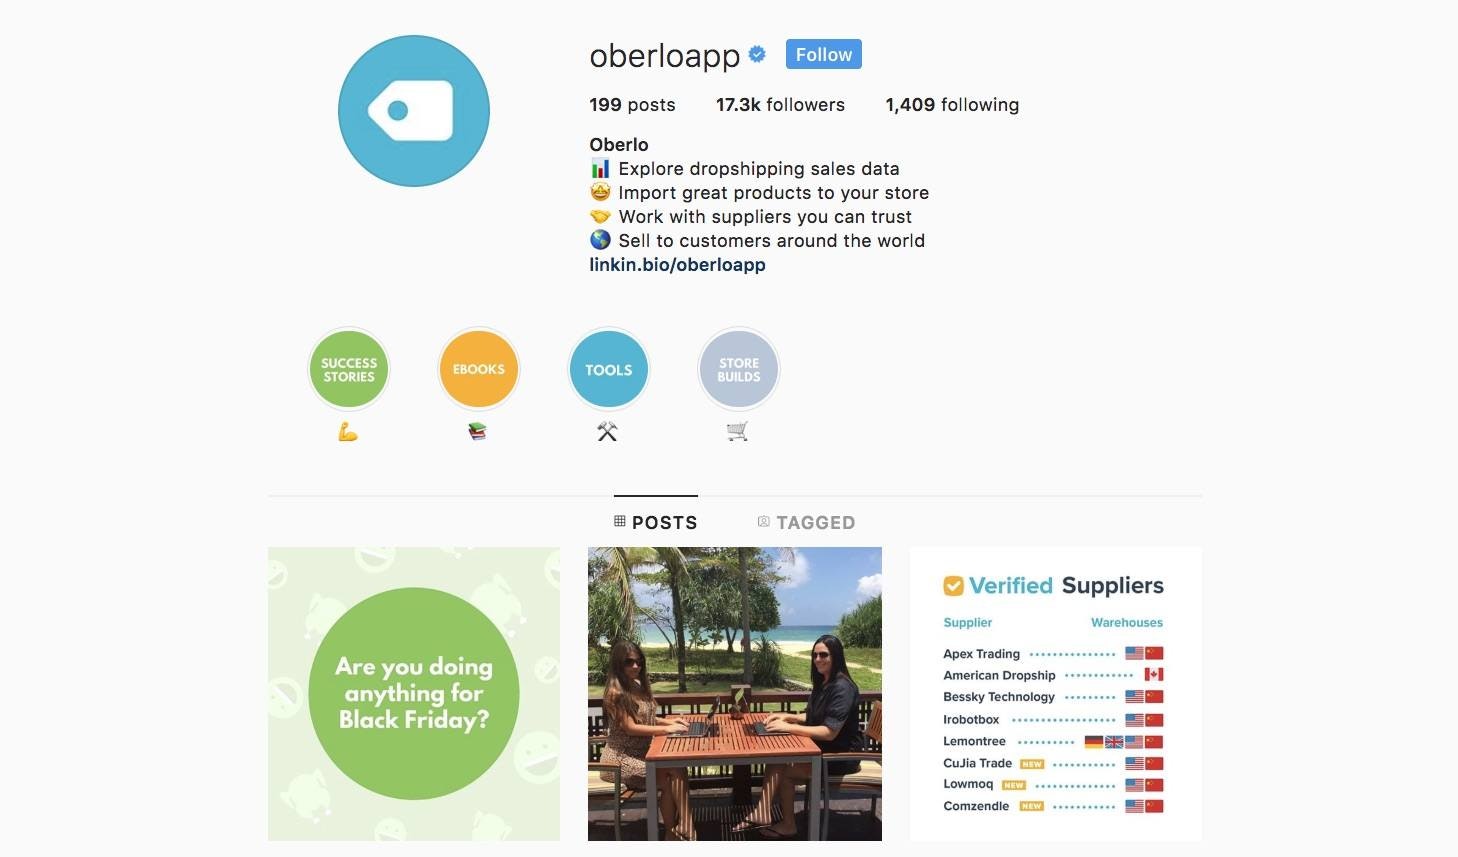 Oberlo instagram verified